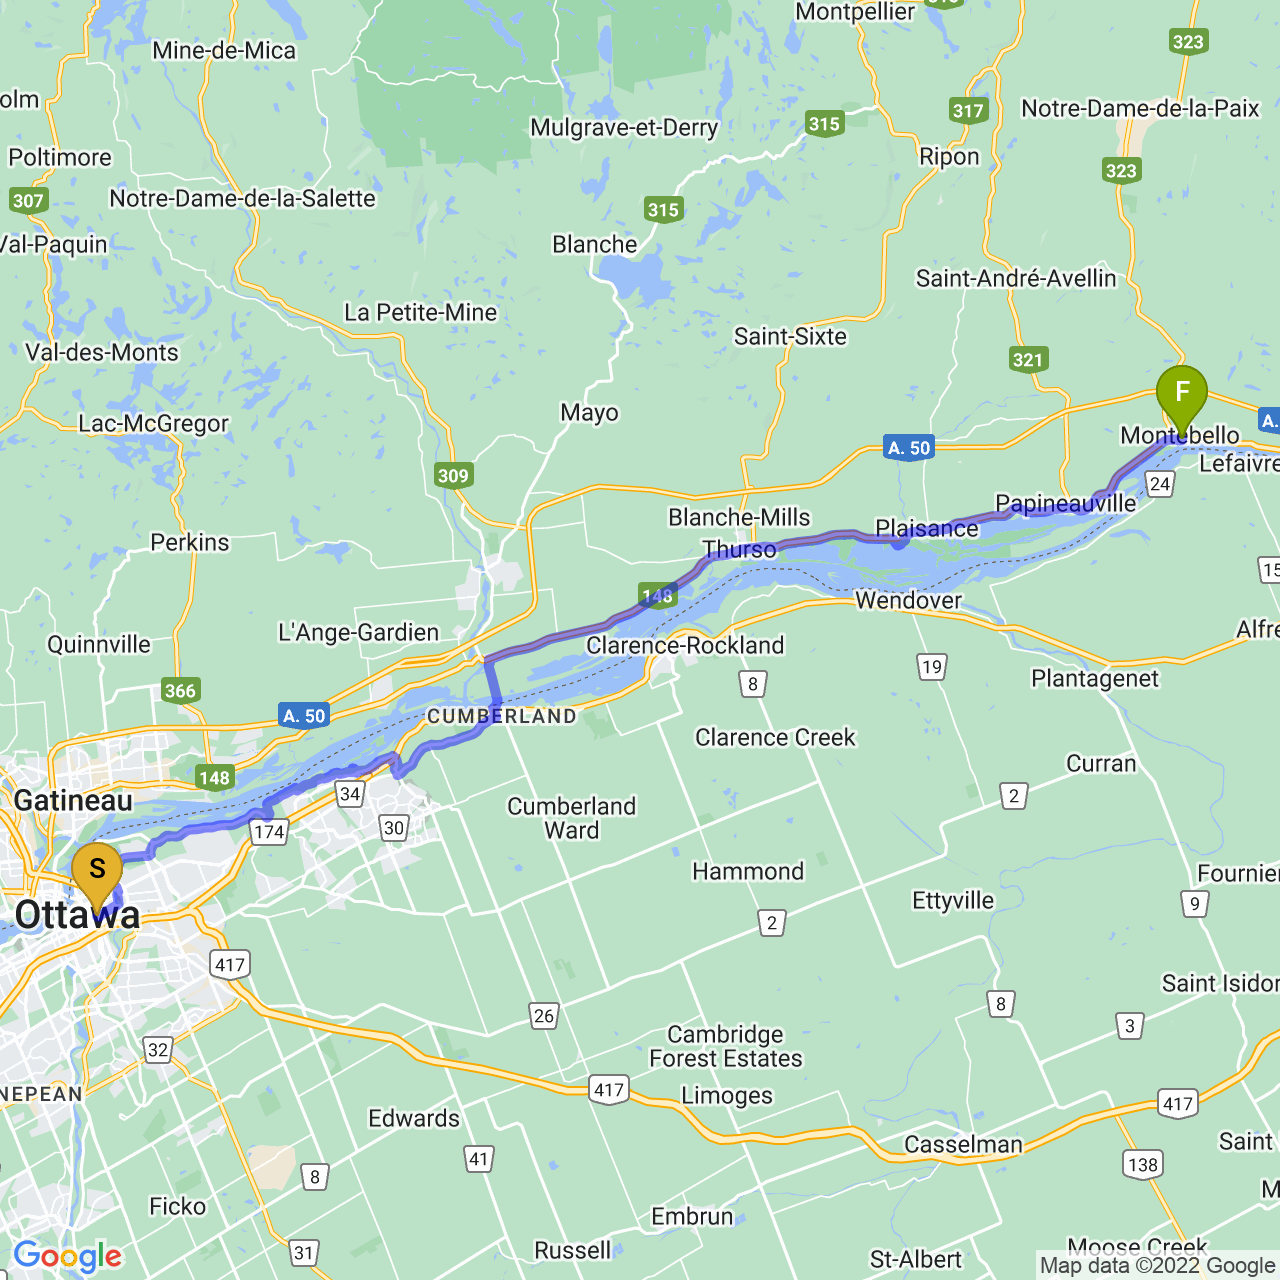 map of On Tour: Ottawa to Montebello